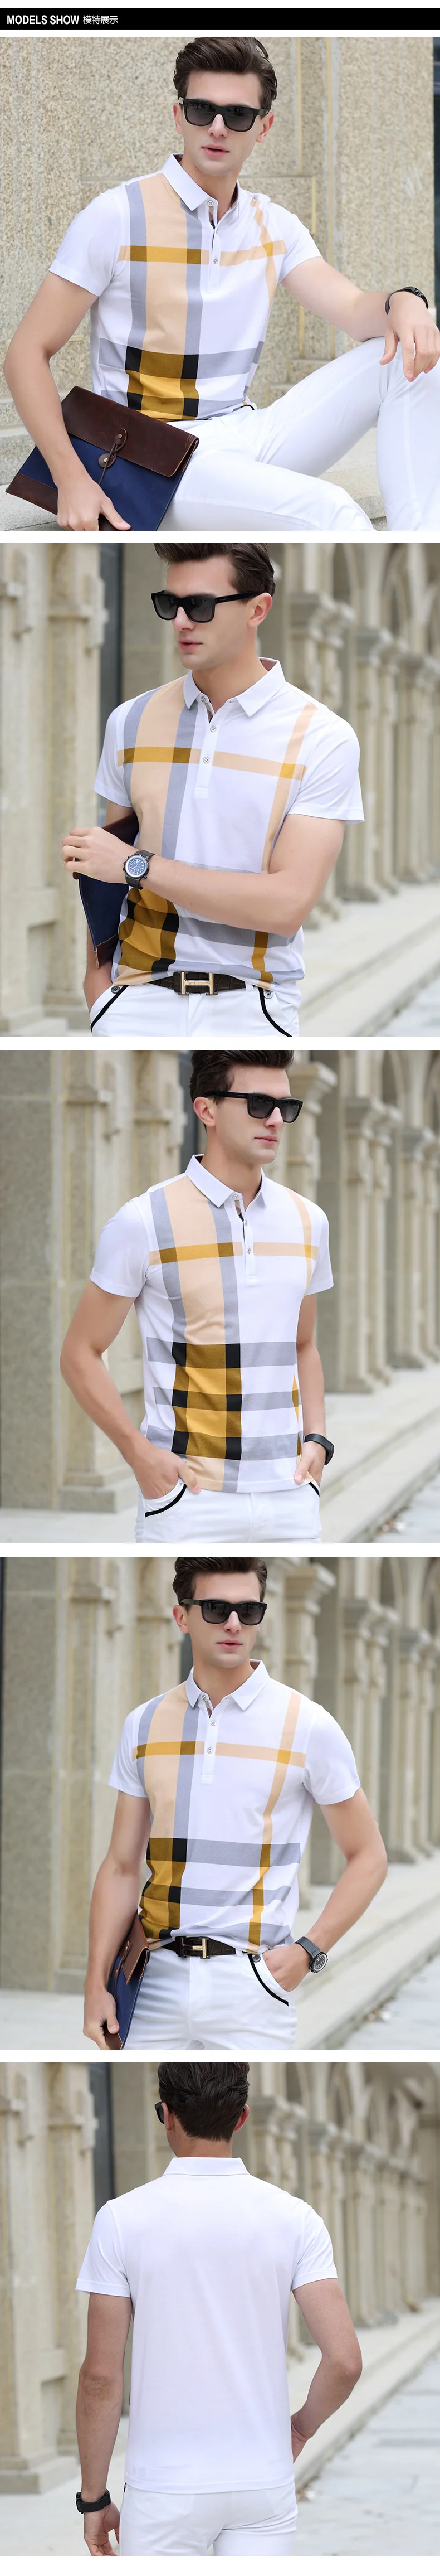 Поло для мужчин s рубашка бренды прямые продажи Лето короткий рукав прохладный дышащий хлопок бизнес люксовый бренд Solid